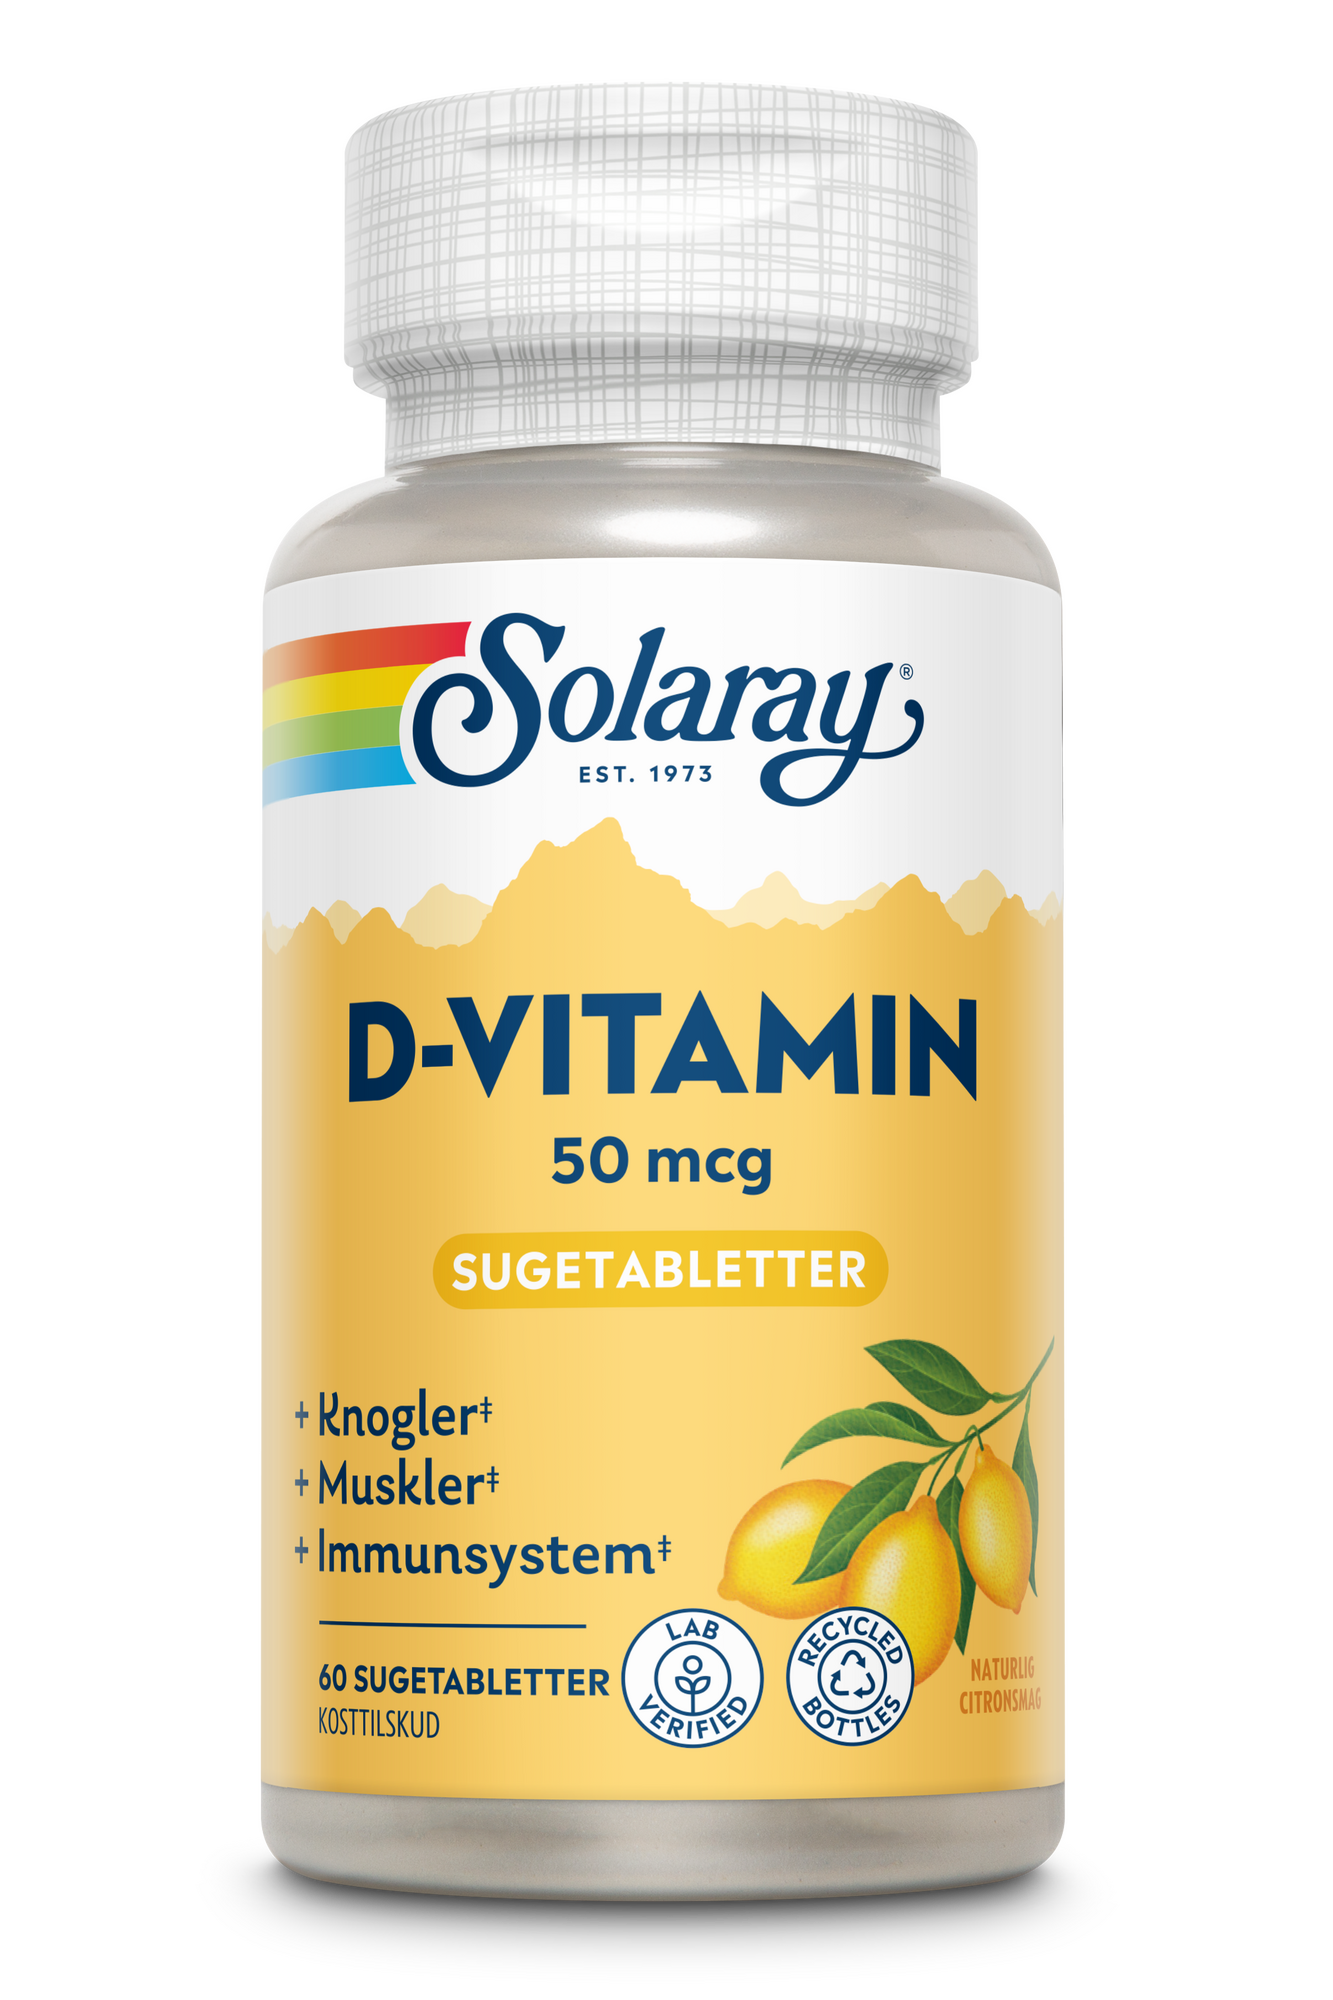 Billede af Solaray D-vitamin 50 mcg - 60 sugetabletter hos Duft og Natur